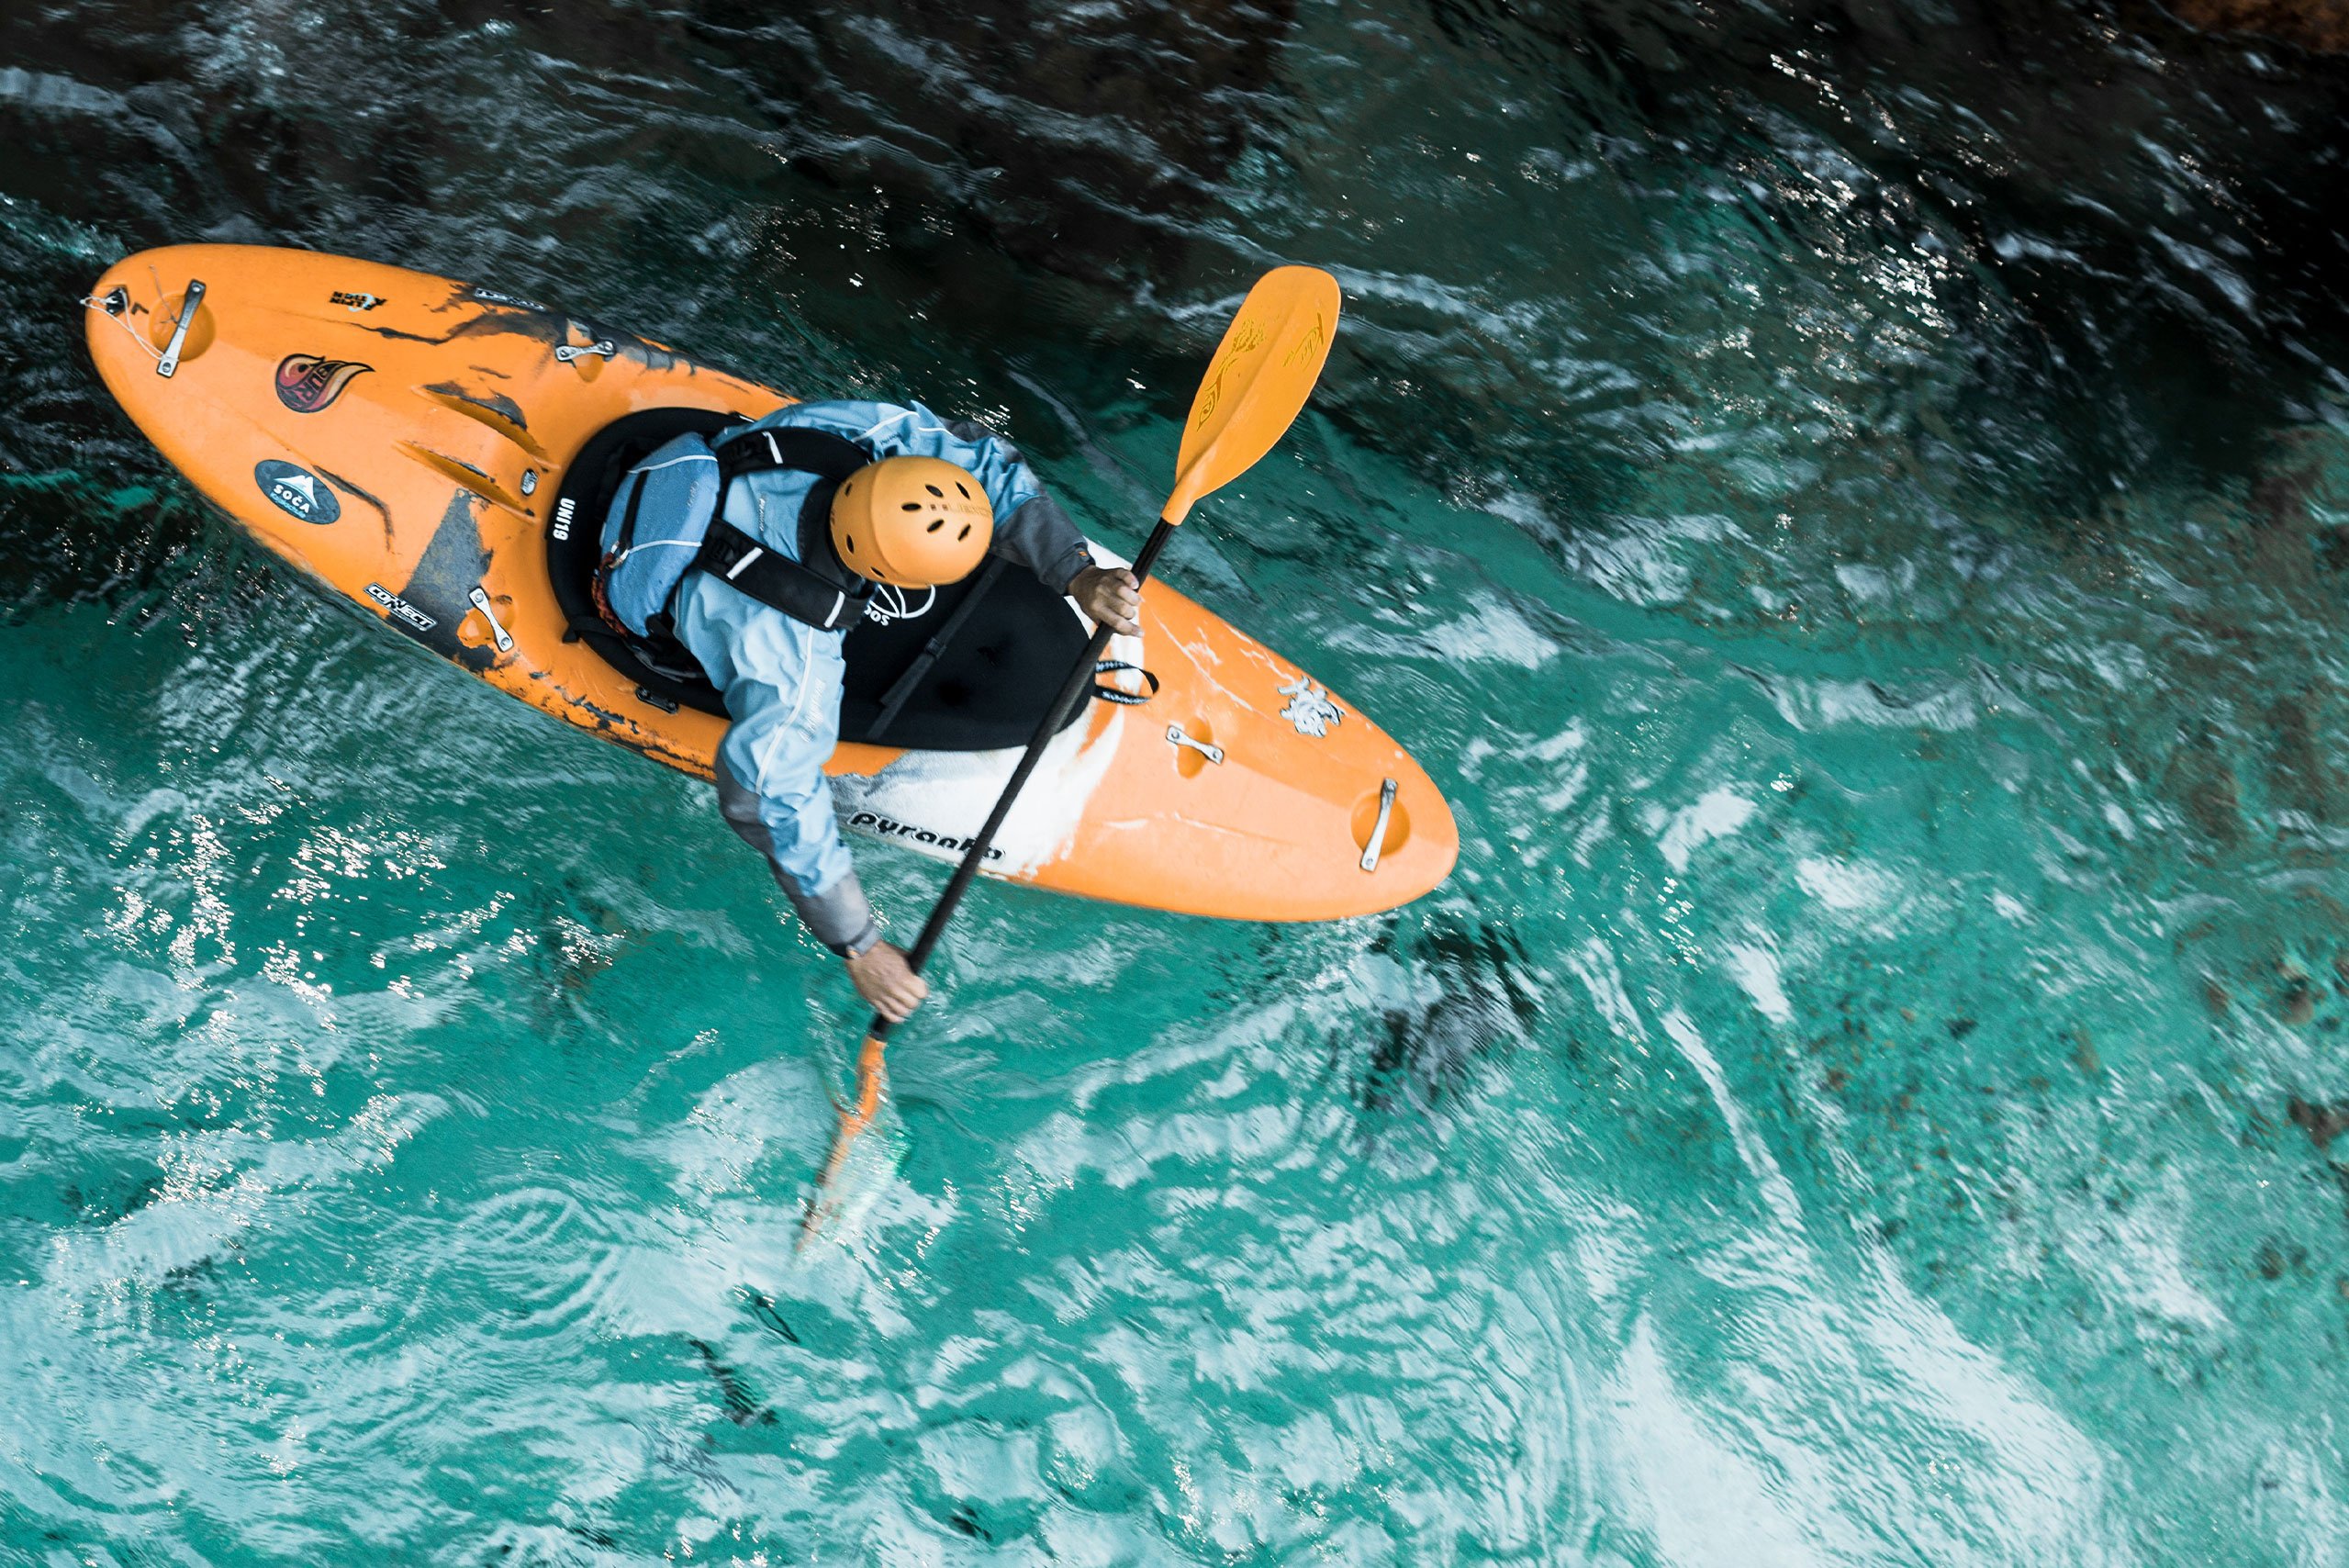 Foto de una persona en kayak remando en el mar vista desde arriba